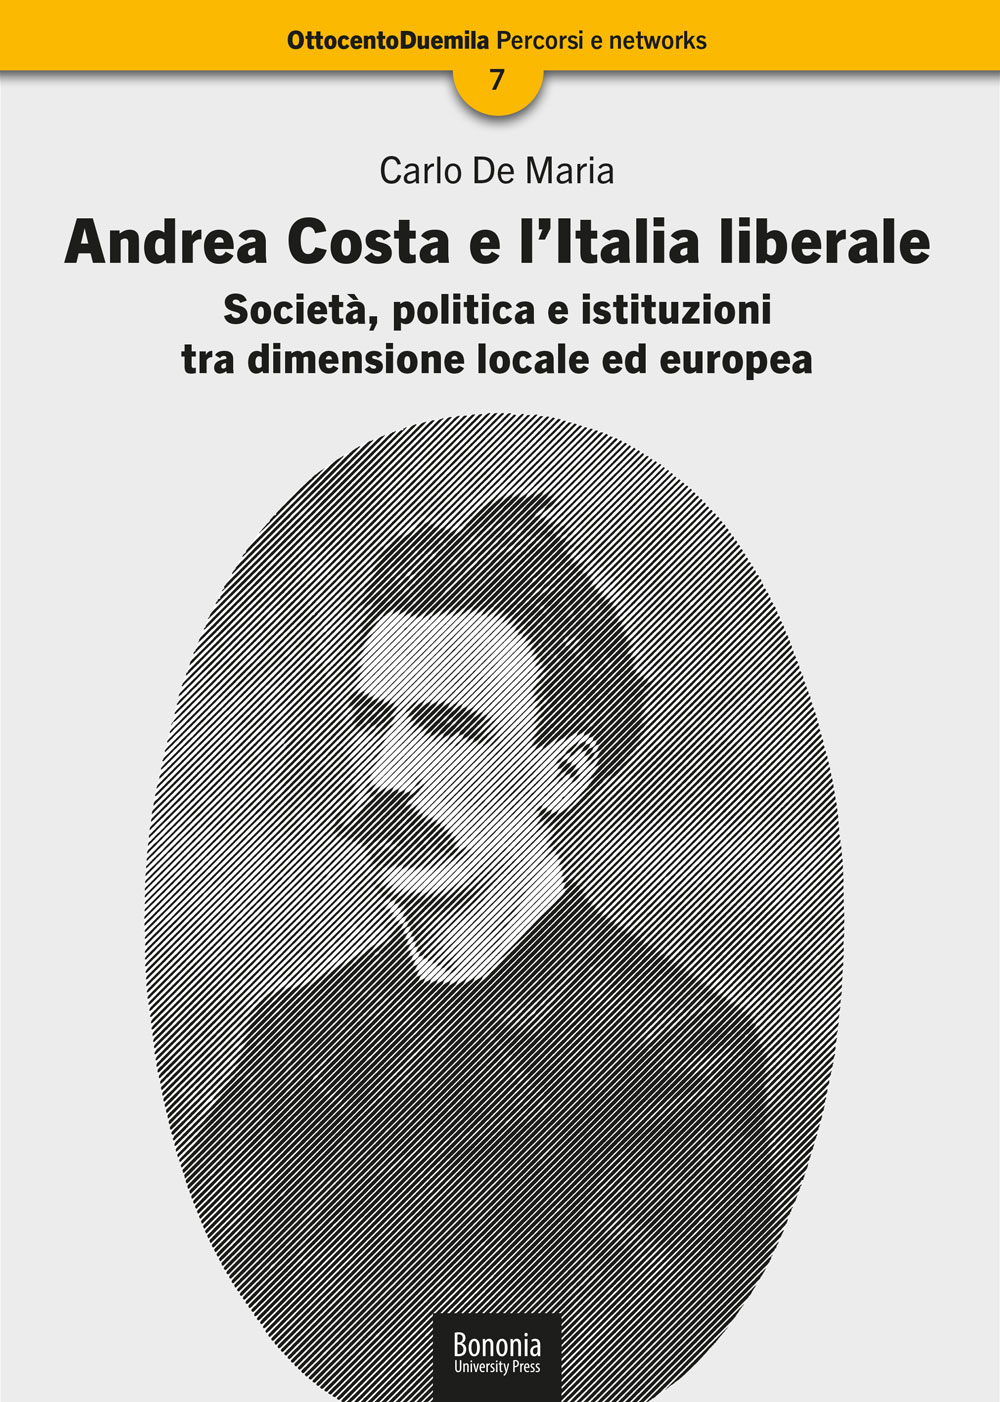 Andrea Costa e l’Italia liberale - Bologna University Press